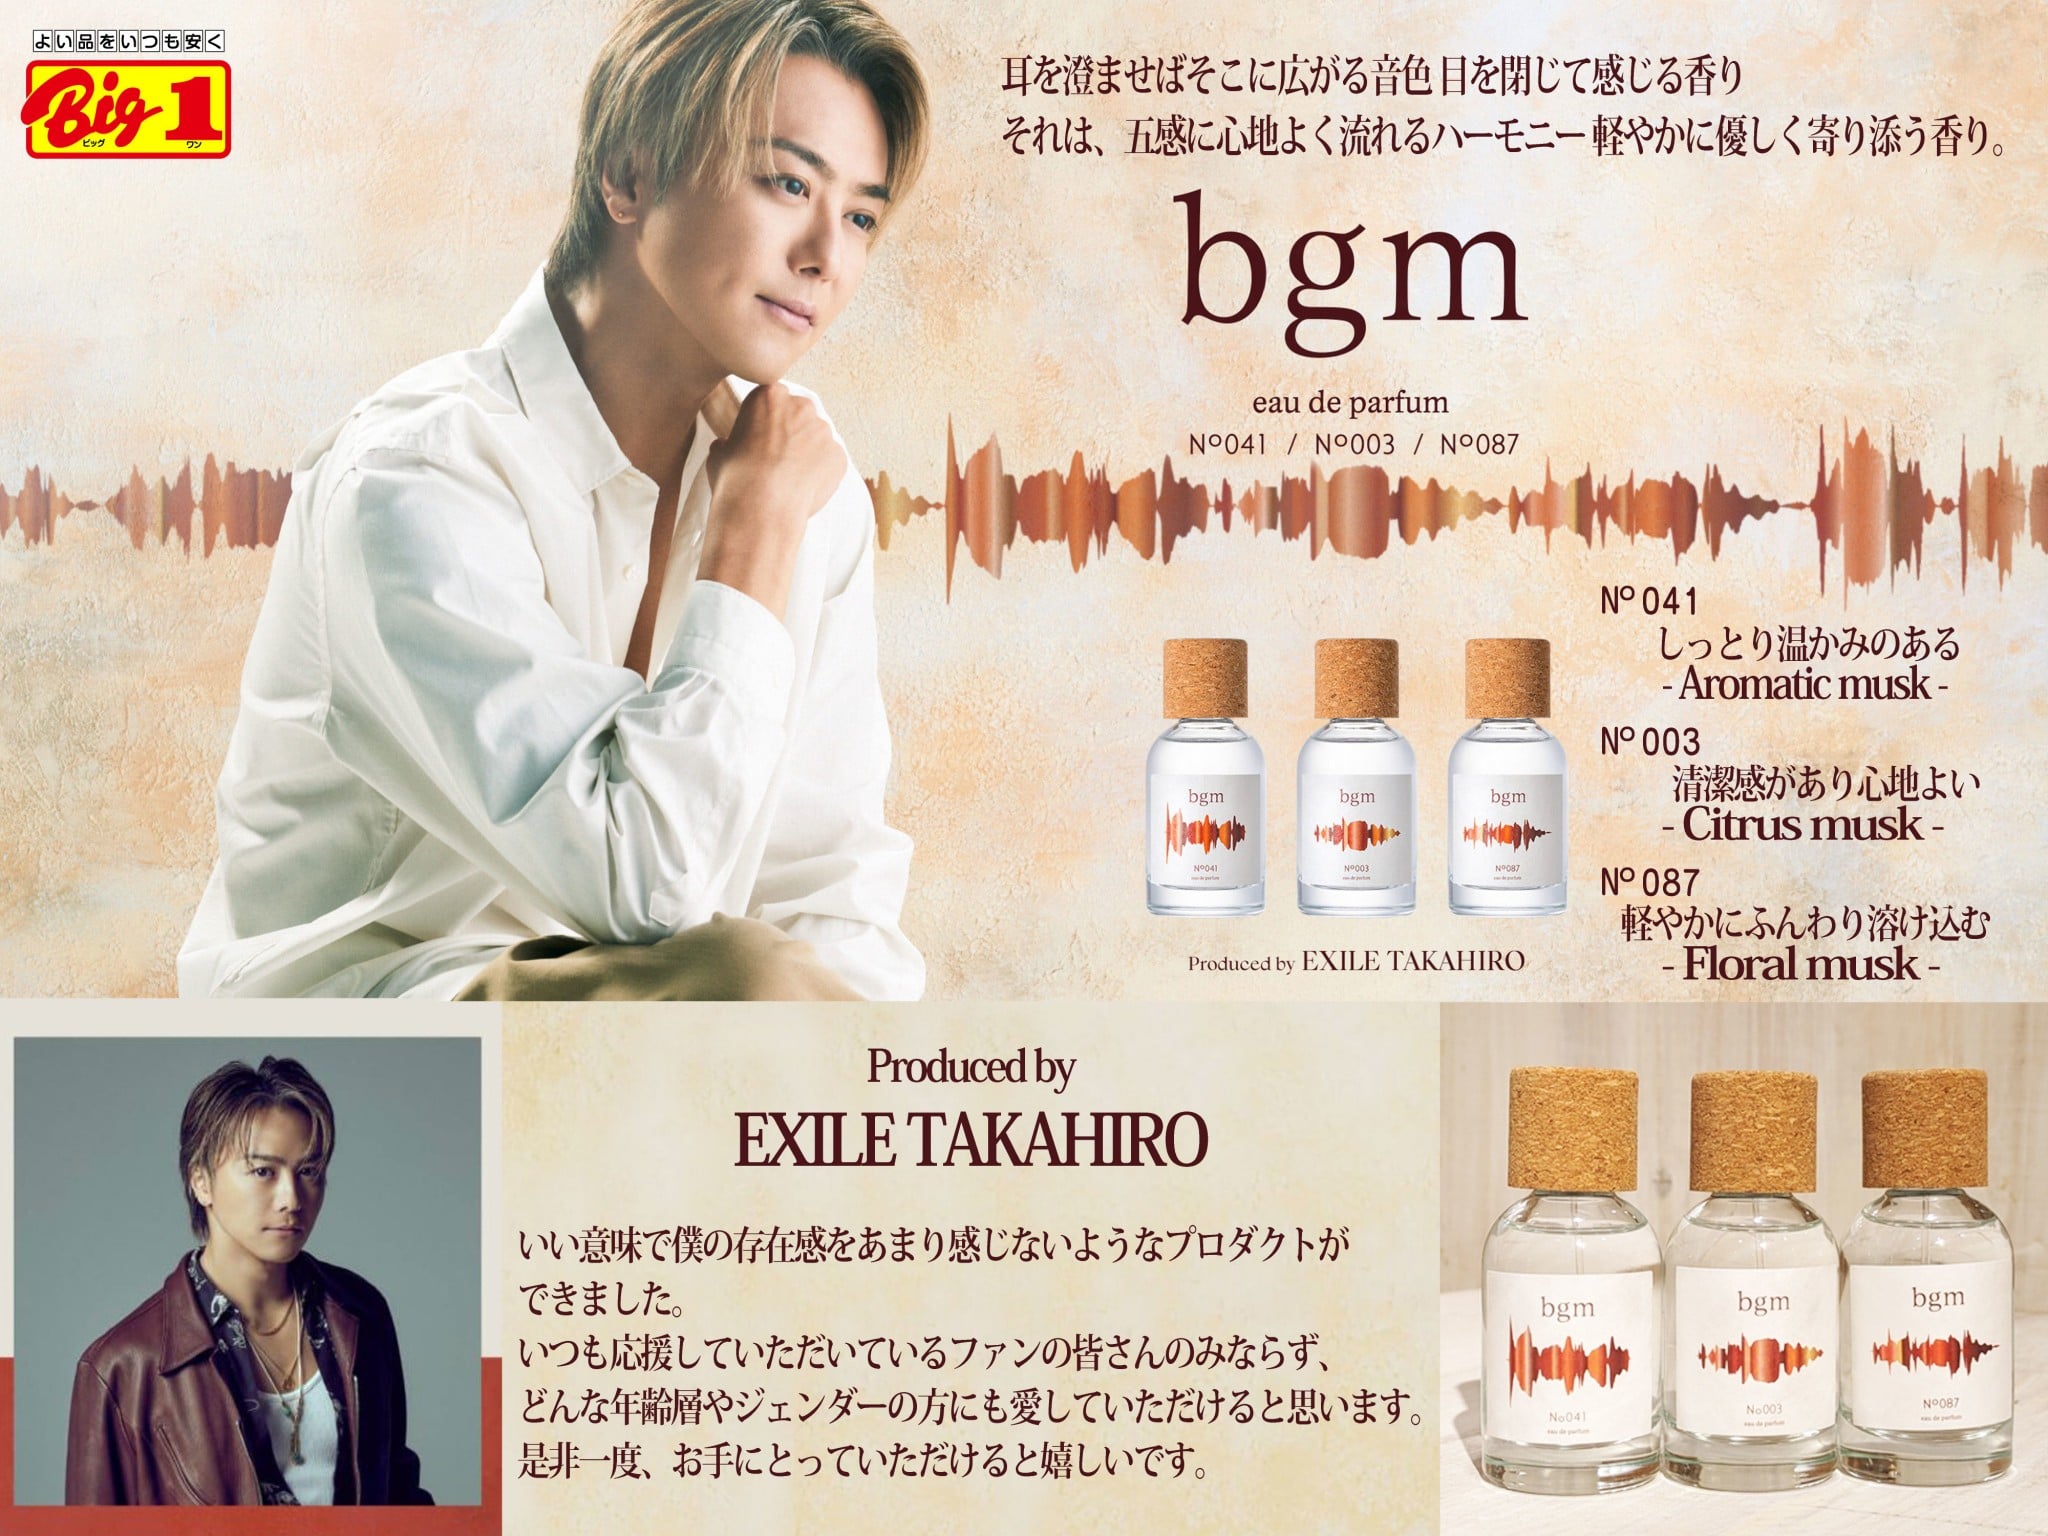 EXILE TAKAHIROさんプロデュース「bgm」が新発売♪